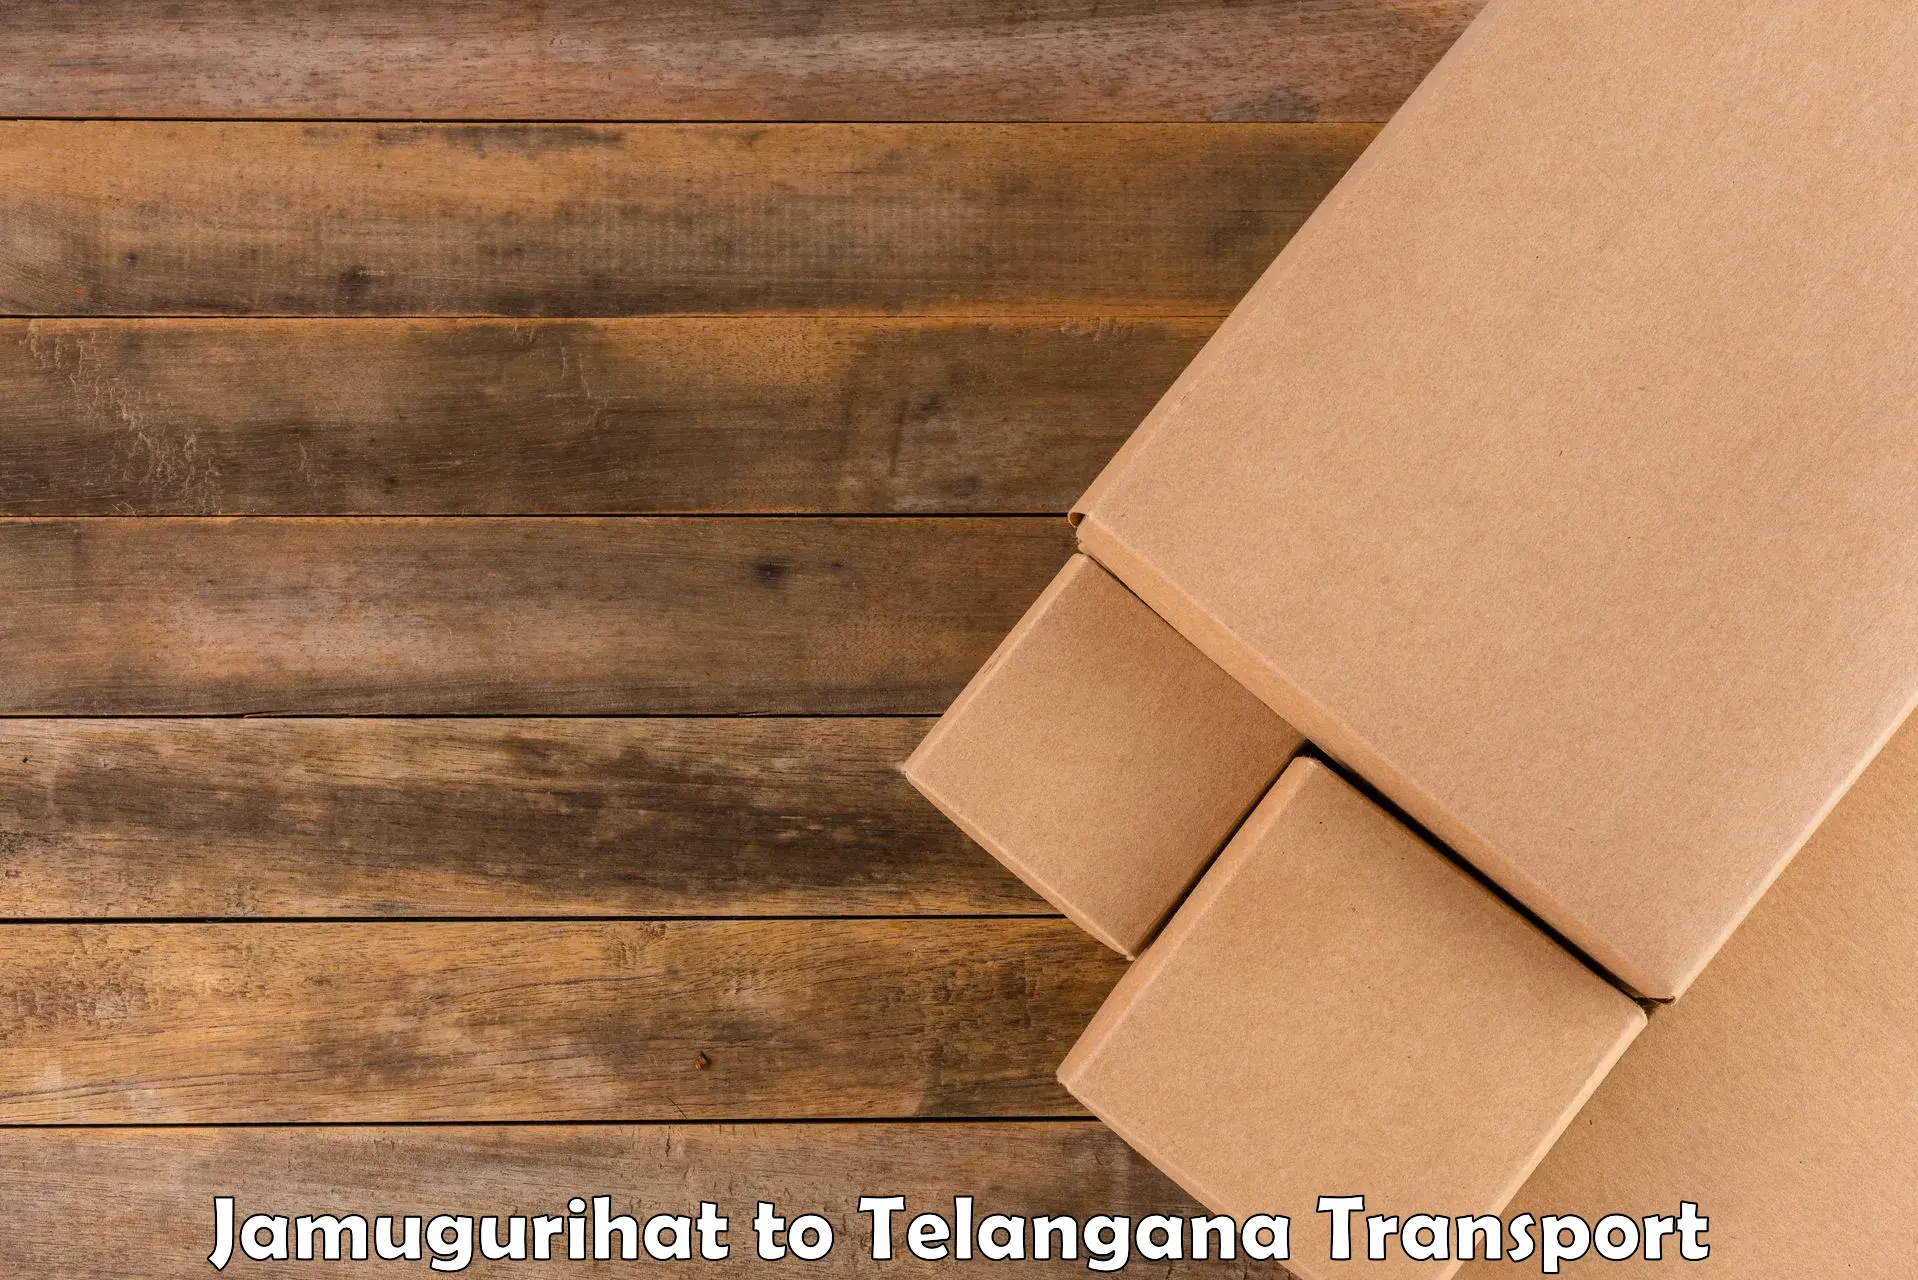 Logistics transportation services Jamugurihat to Gudur Warangal